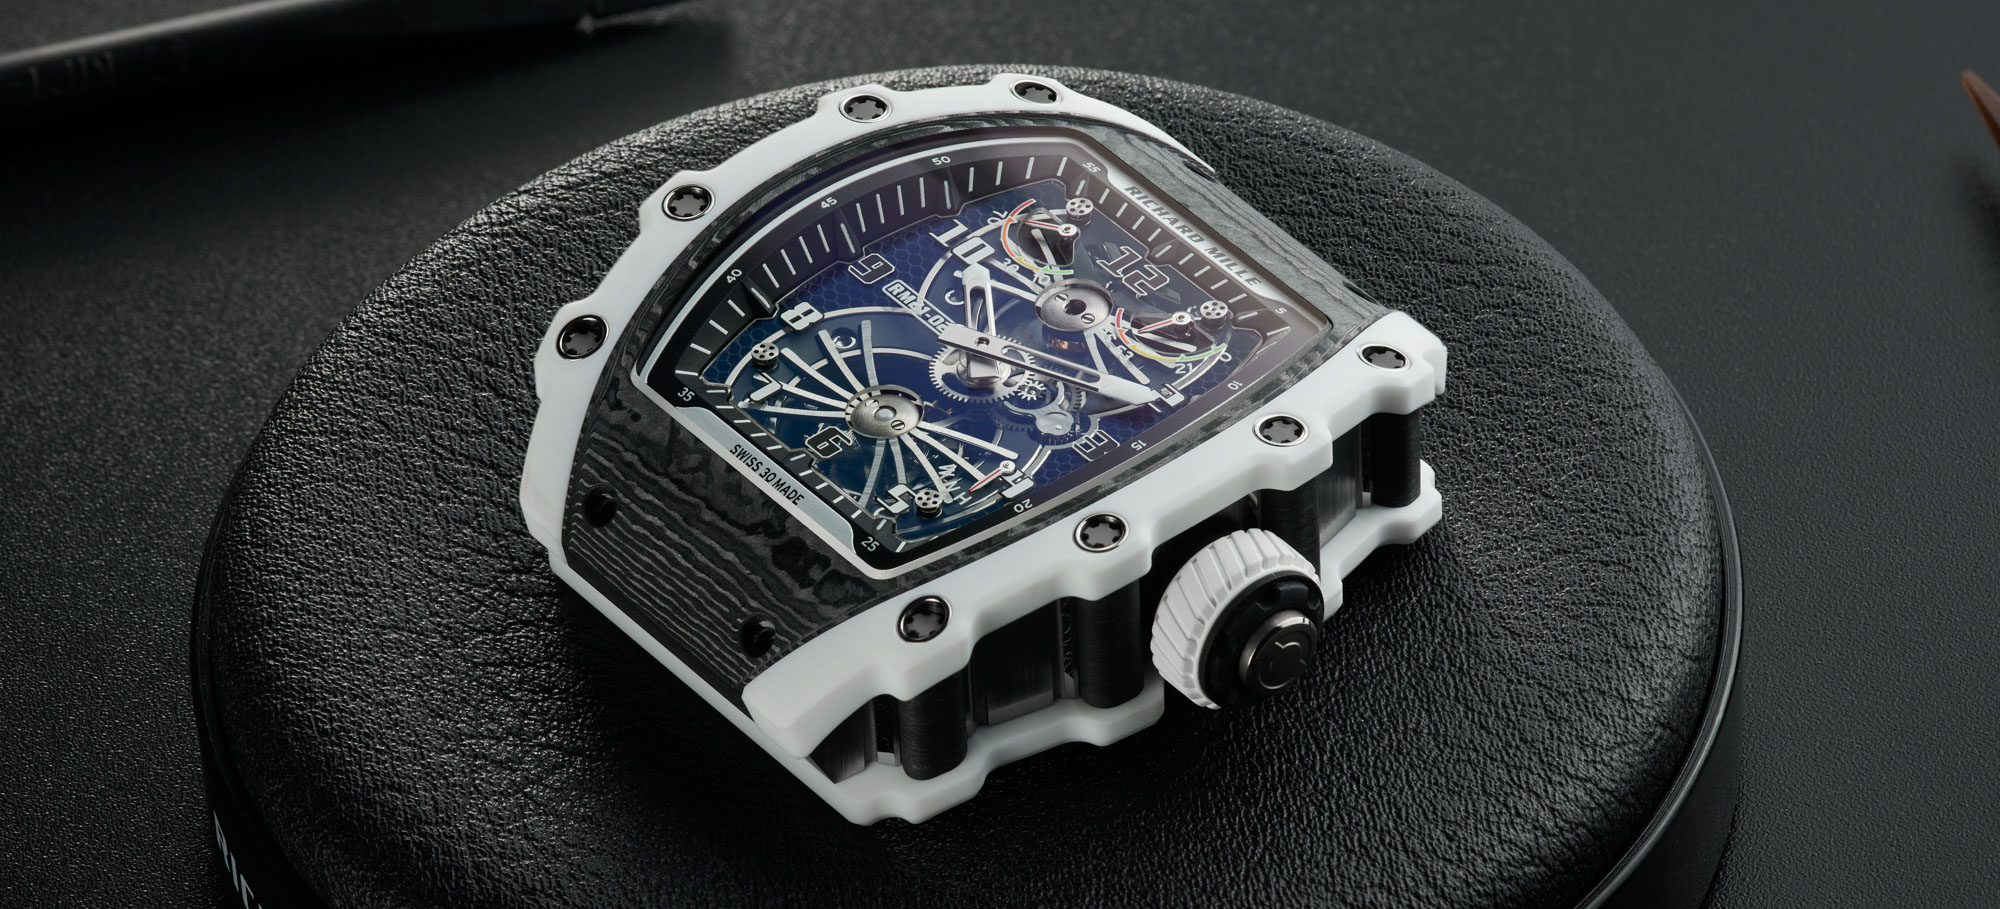 Richard Mille RM 47 Tourbillon Skeleton - Luxury Watches USA